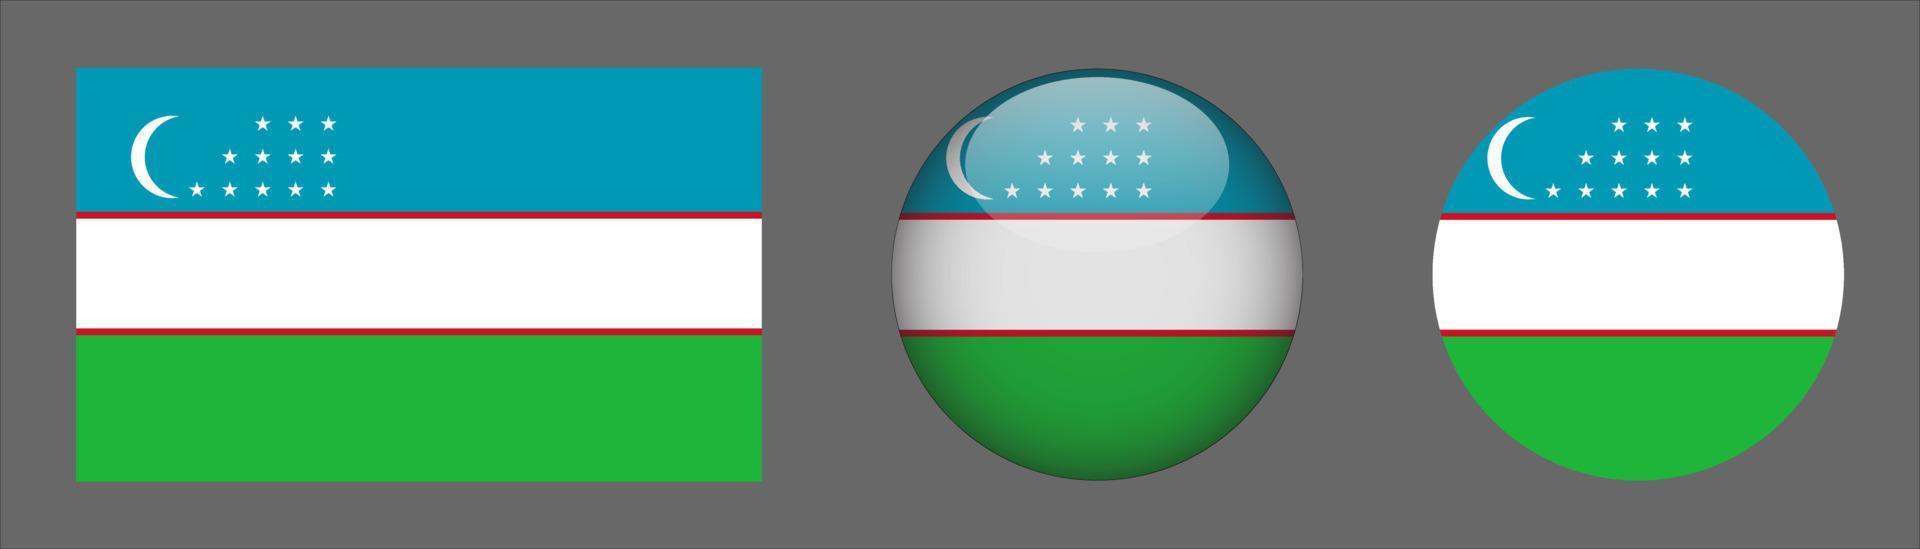 Coleção do conjunto de bandeiras do uzbequistão, proporção do tamanho original, 3D arredondado, plano arredondado. vetor